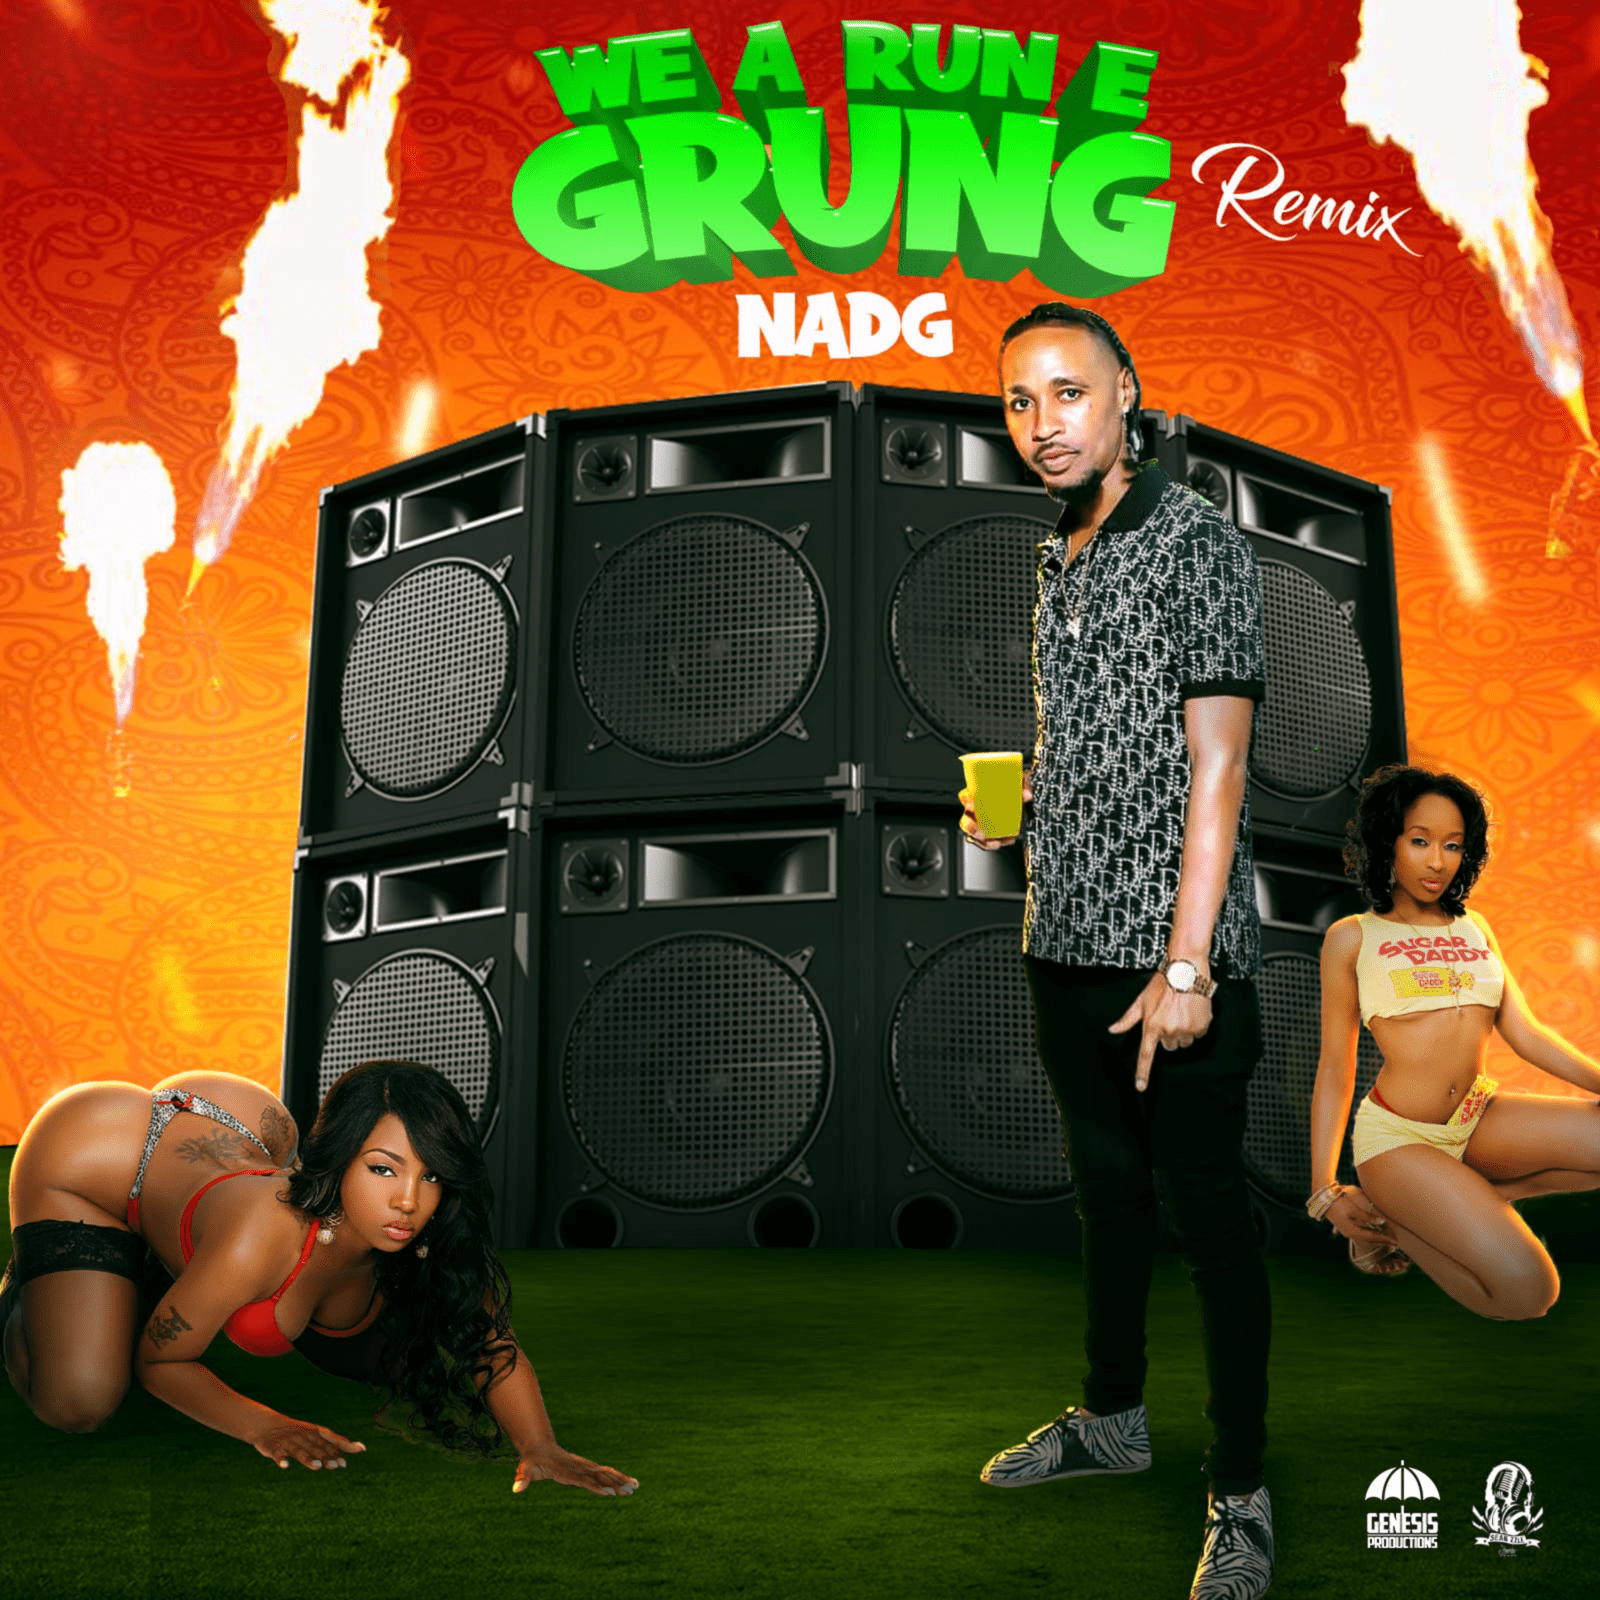 Nadg - We a Run E Grung Remix